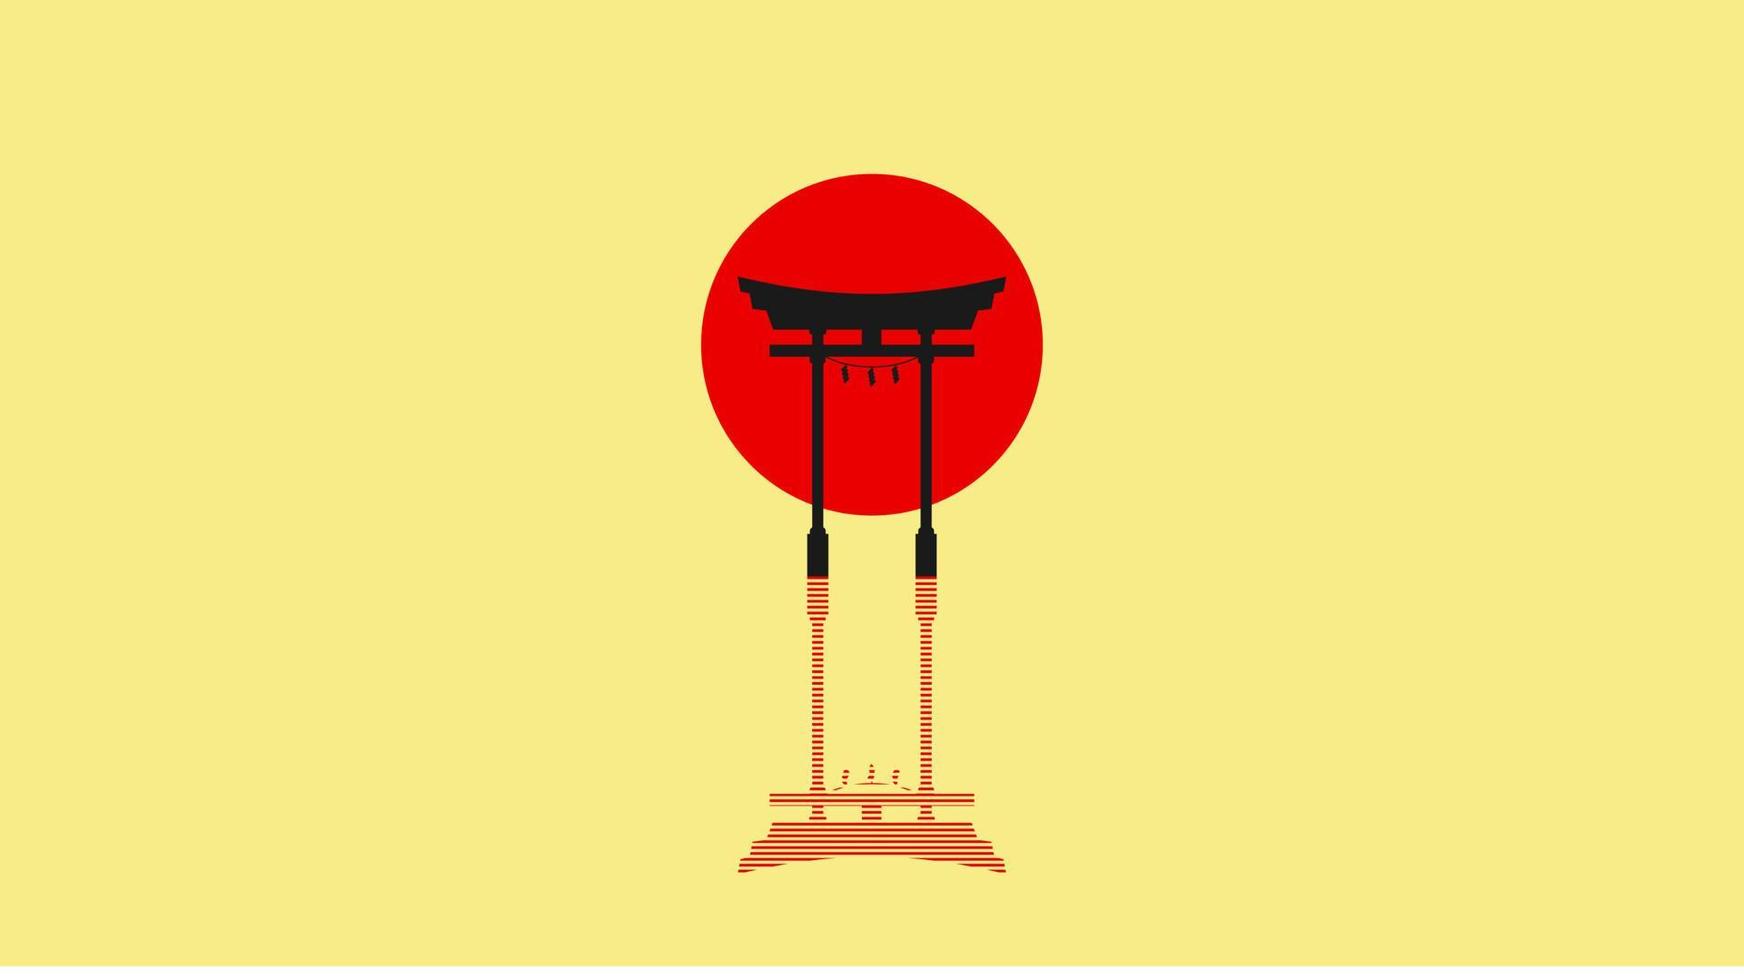 cancello torii giapponese. simbolo del Giappone, religione shintoista. sacro tori in legno rosso arch. ingresso antico, patrimonio orientale e punto di riferimento. architettura religiosa orientale. illustrazione vettoriale design piatto